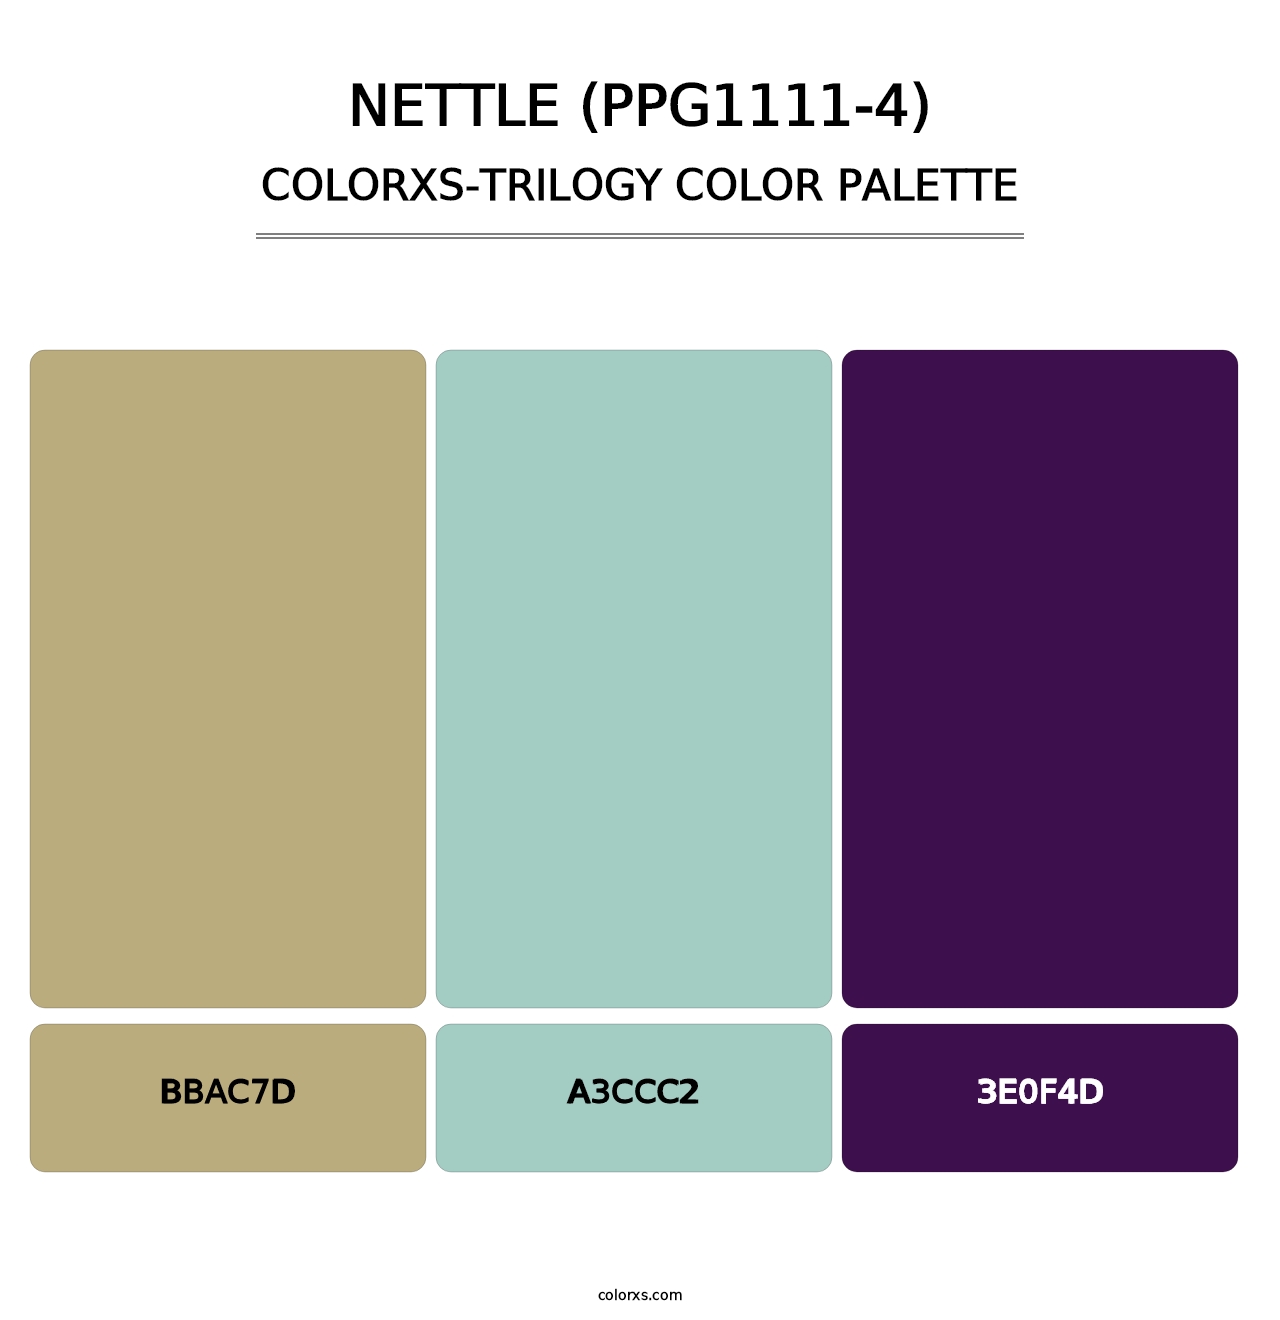 Nettle (PPG1111-4) - Colorxs Trilogy Palette